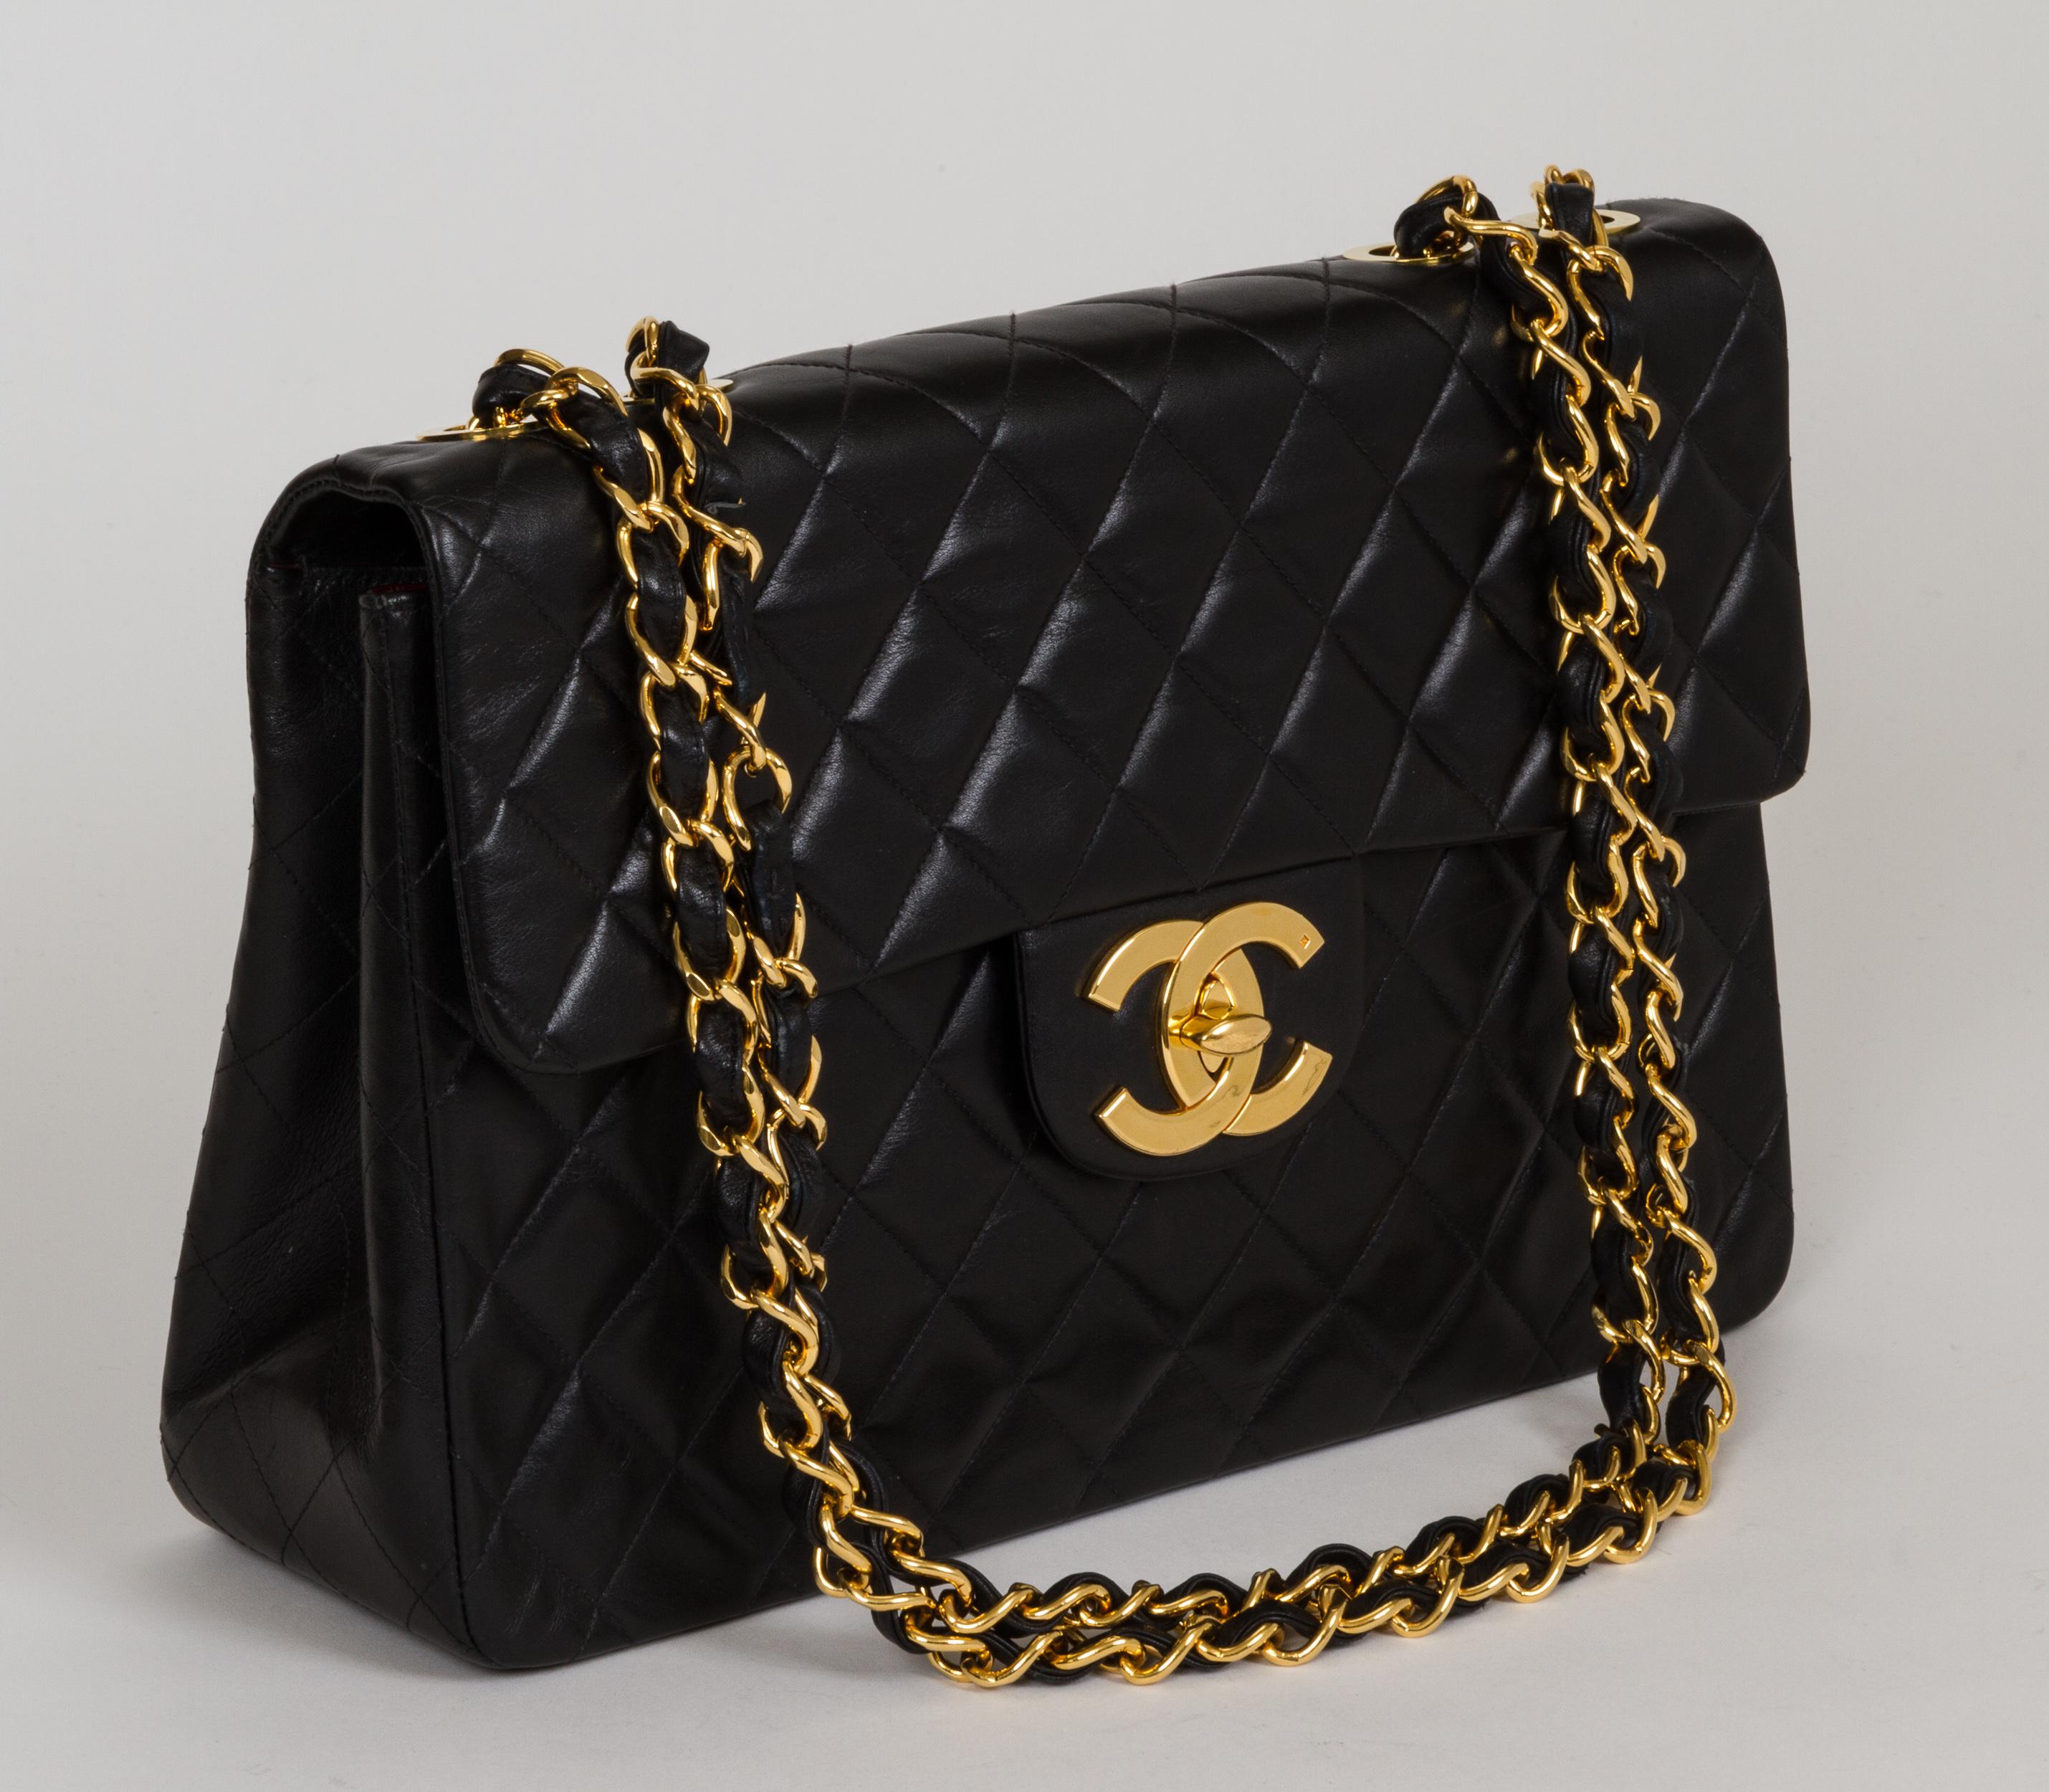 Klassische Chanel Tasche mit Maxiklappe und dem charakteristischen übergroßen 